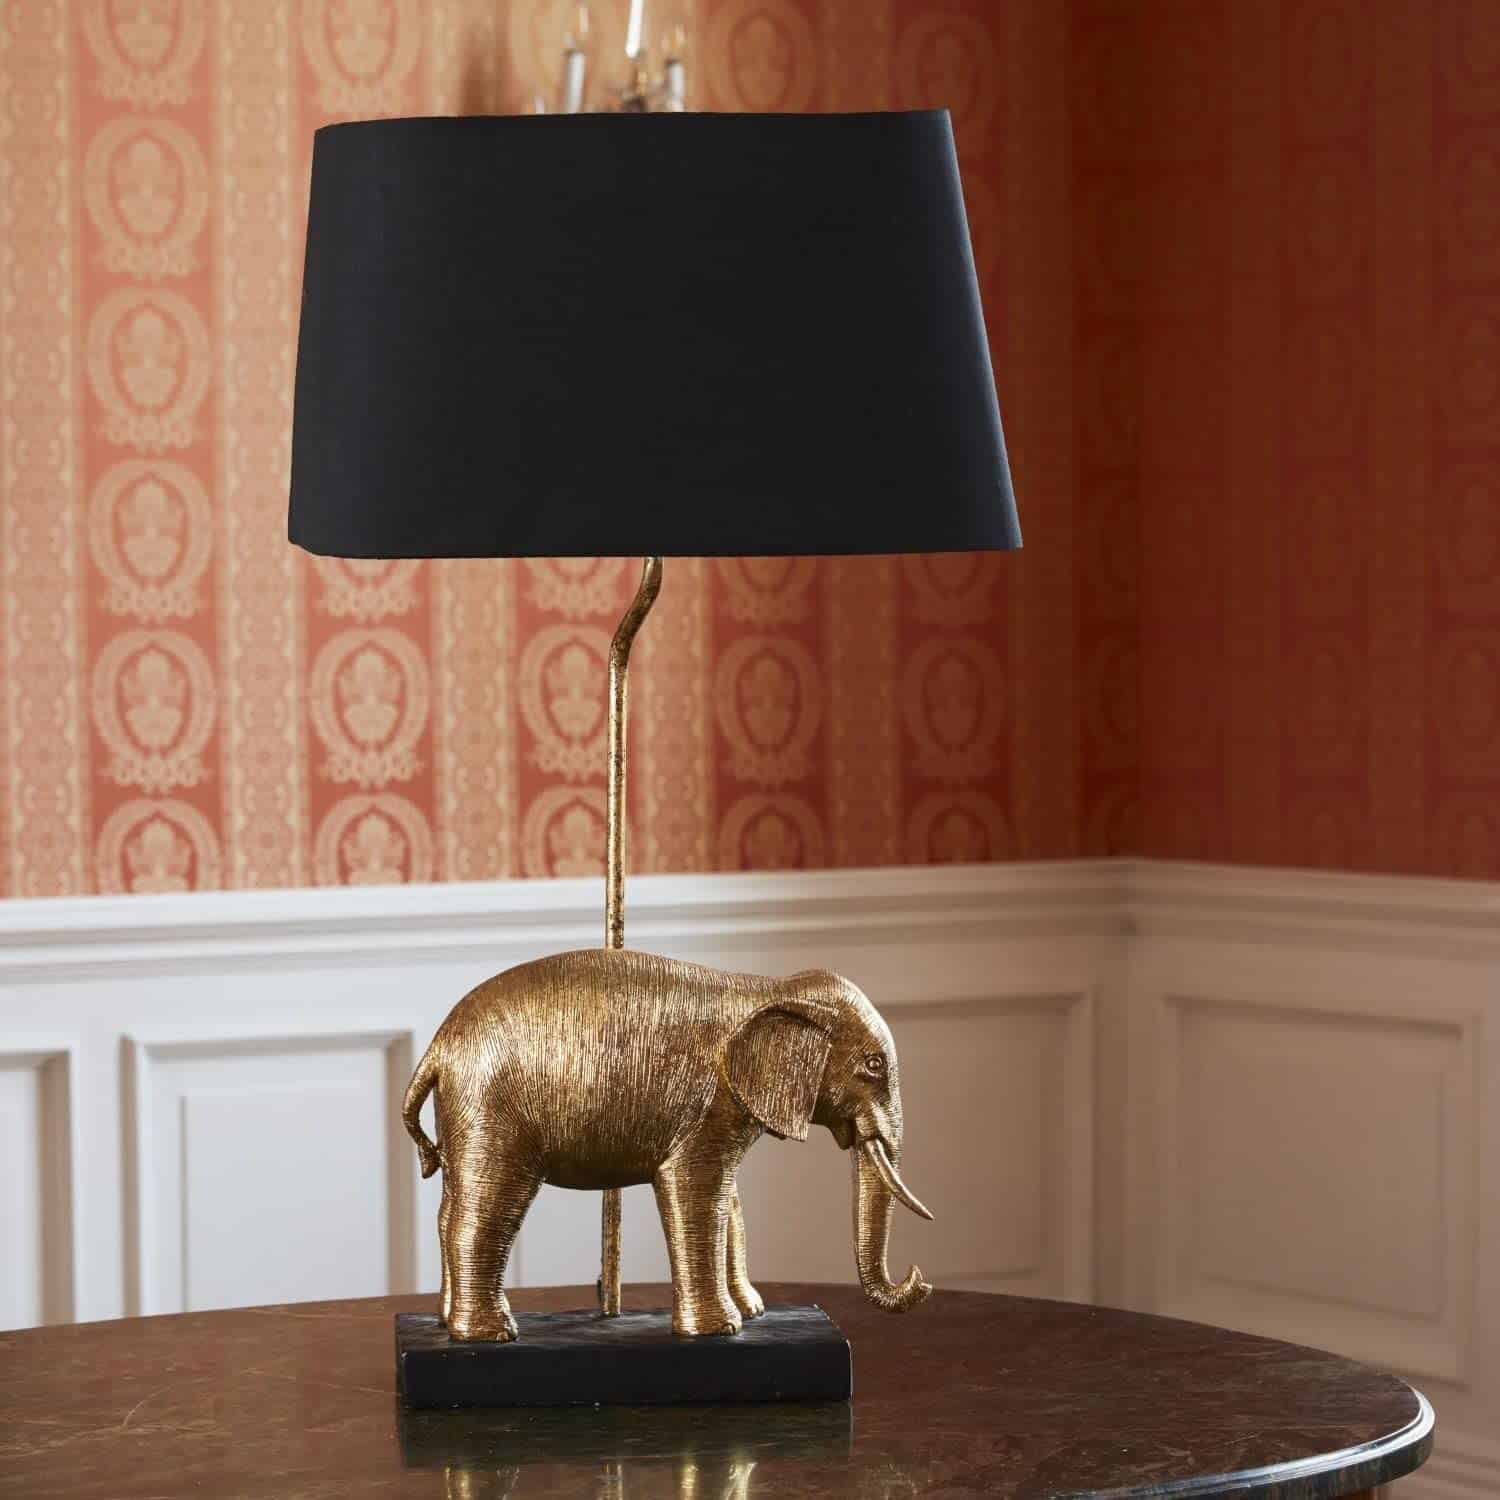 XXL Lampe Giraffenfigur Leuchte Tierskulptur Wohnzimmerlampe Nachttischlampe 